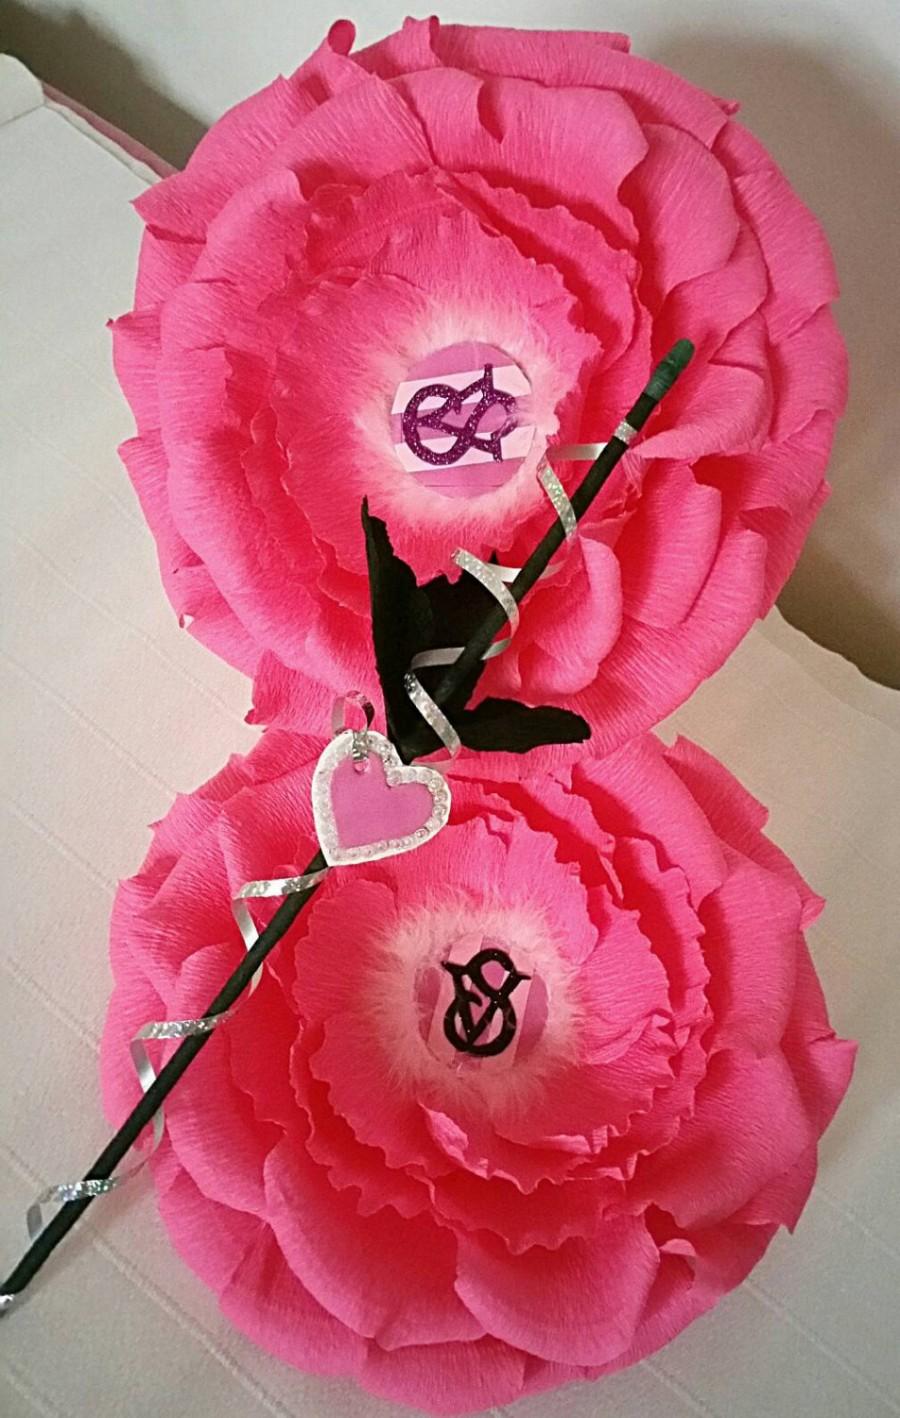 زفاف - Victoria's secret flower party UK, design decor flower details UK Bridetobe UK, Victoria Secret inspired Birthday partyUK